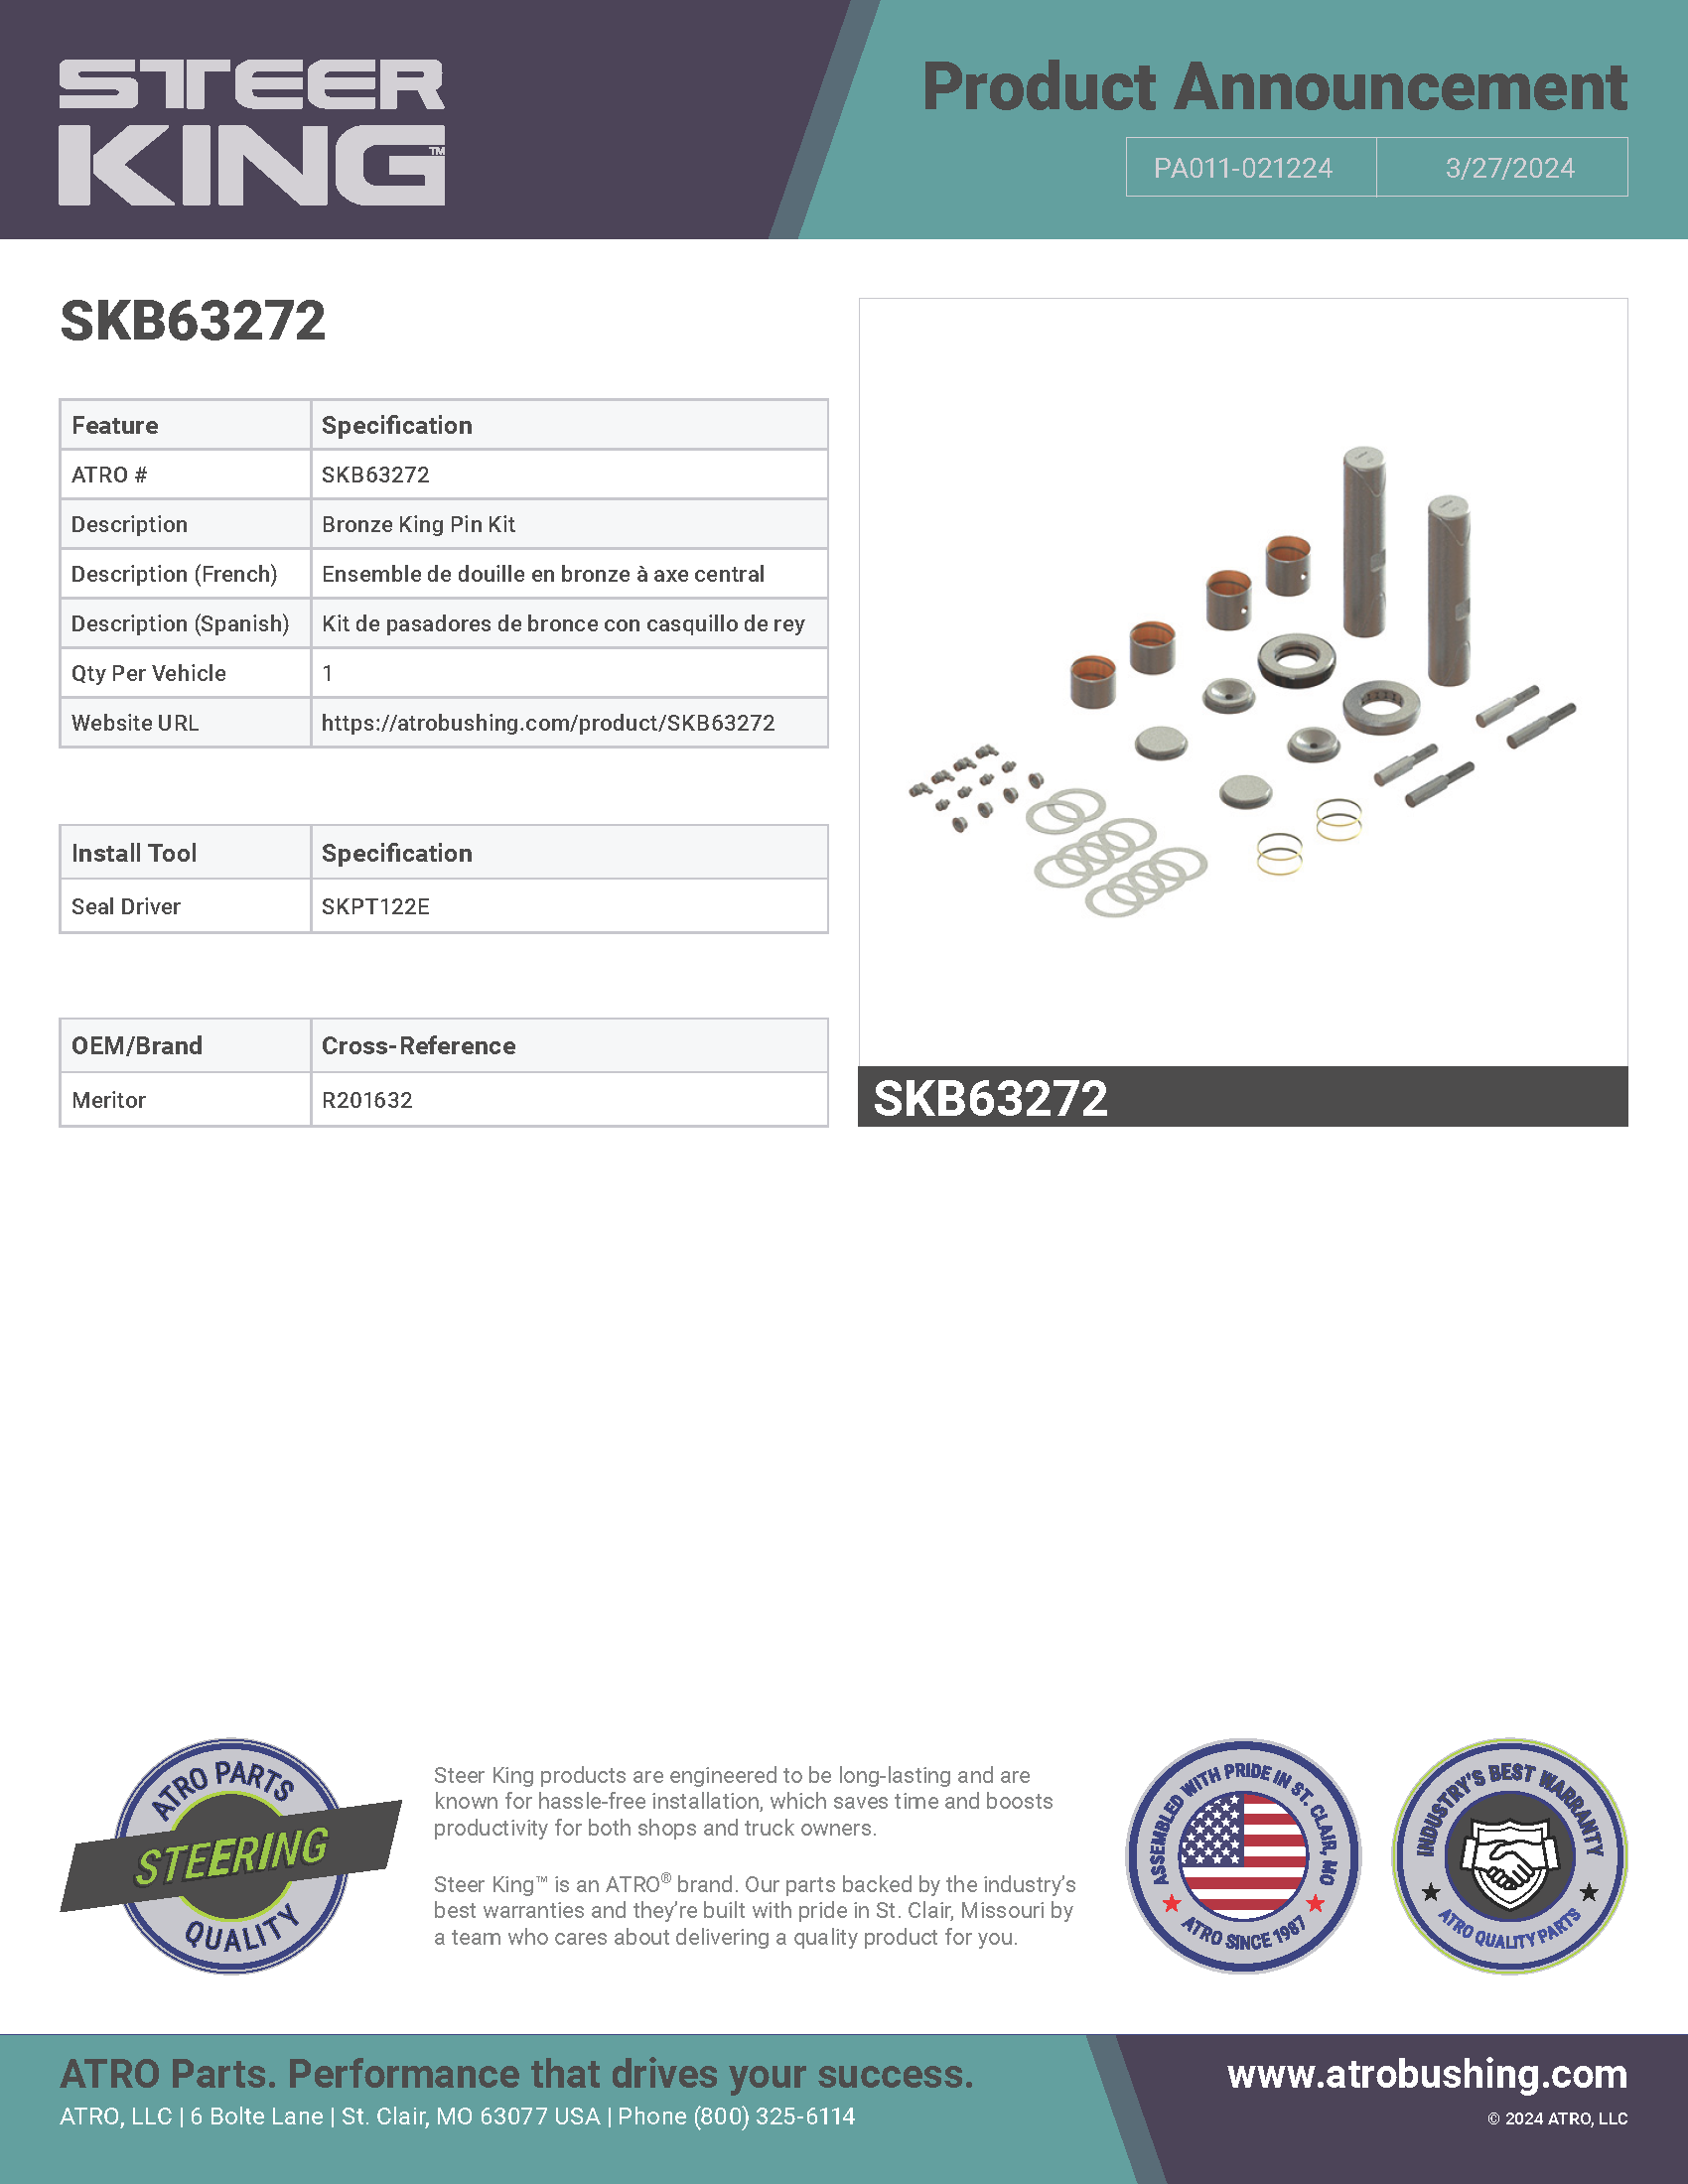 SKB63272 Bronze King Pin Kit PA011-021224